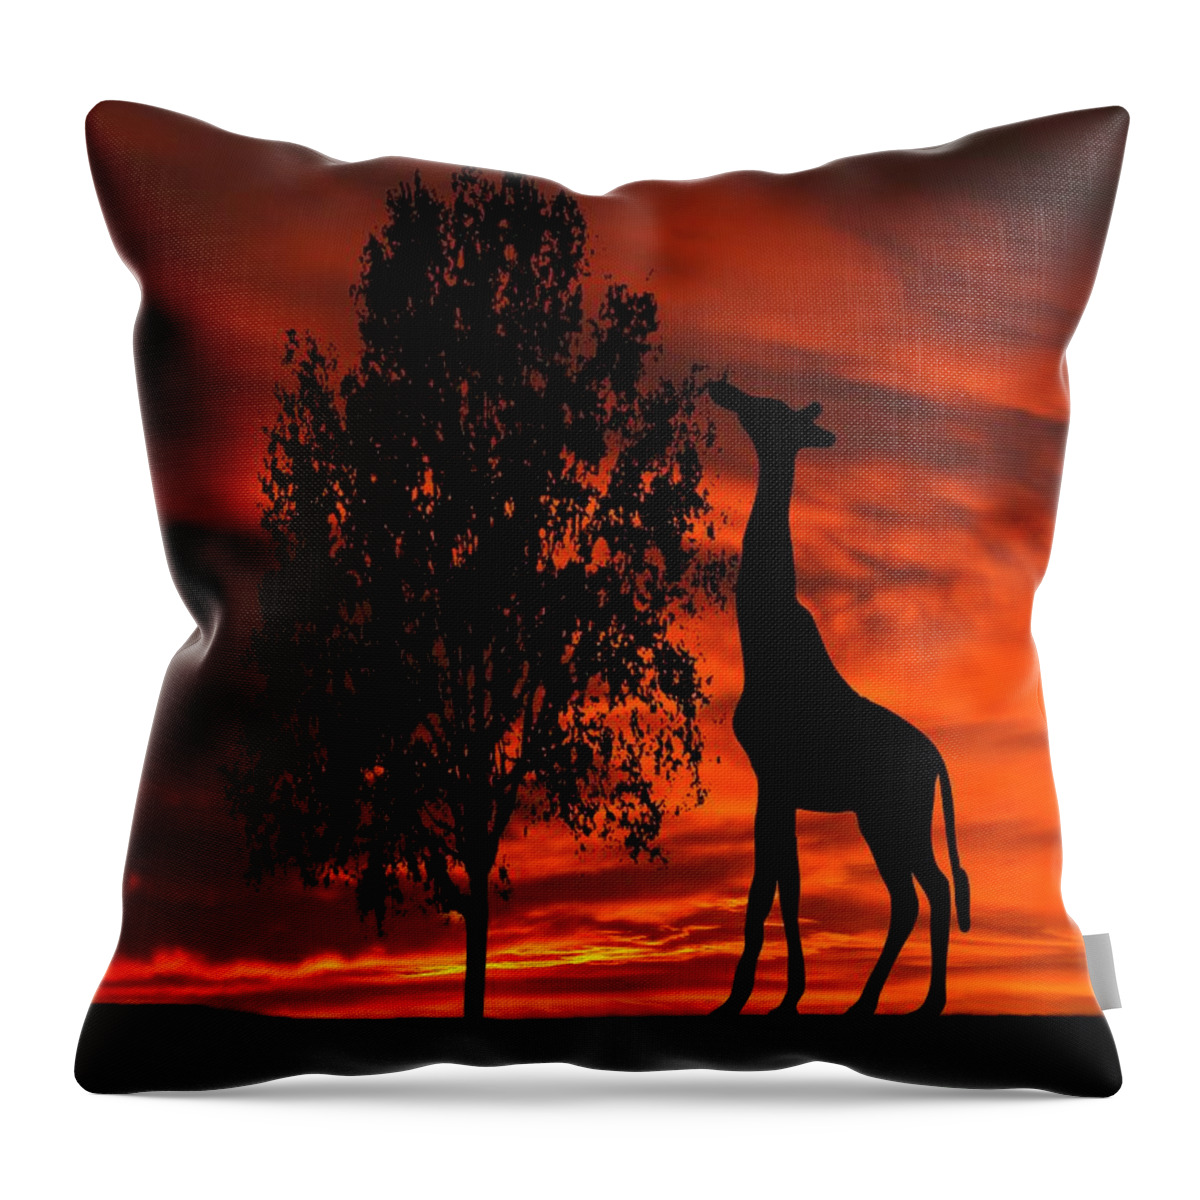 Giraffe Throw Pillow featuring the photograph Giraffe Sunset Silhouette Series by David Dehner